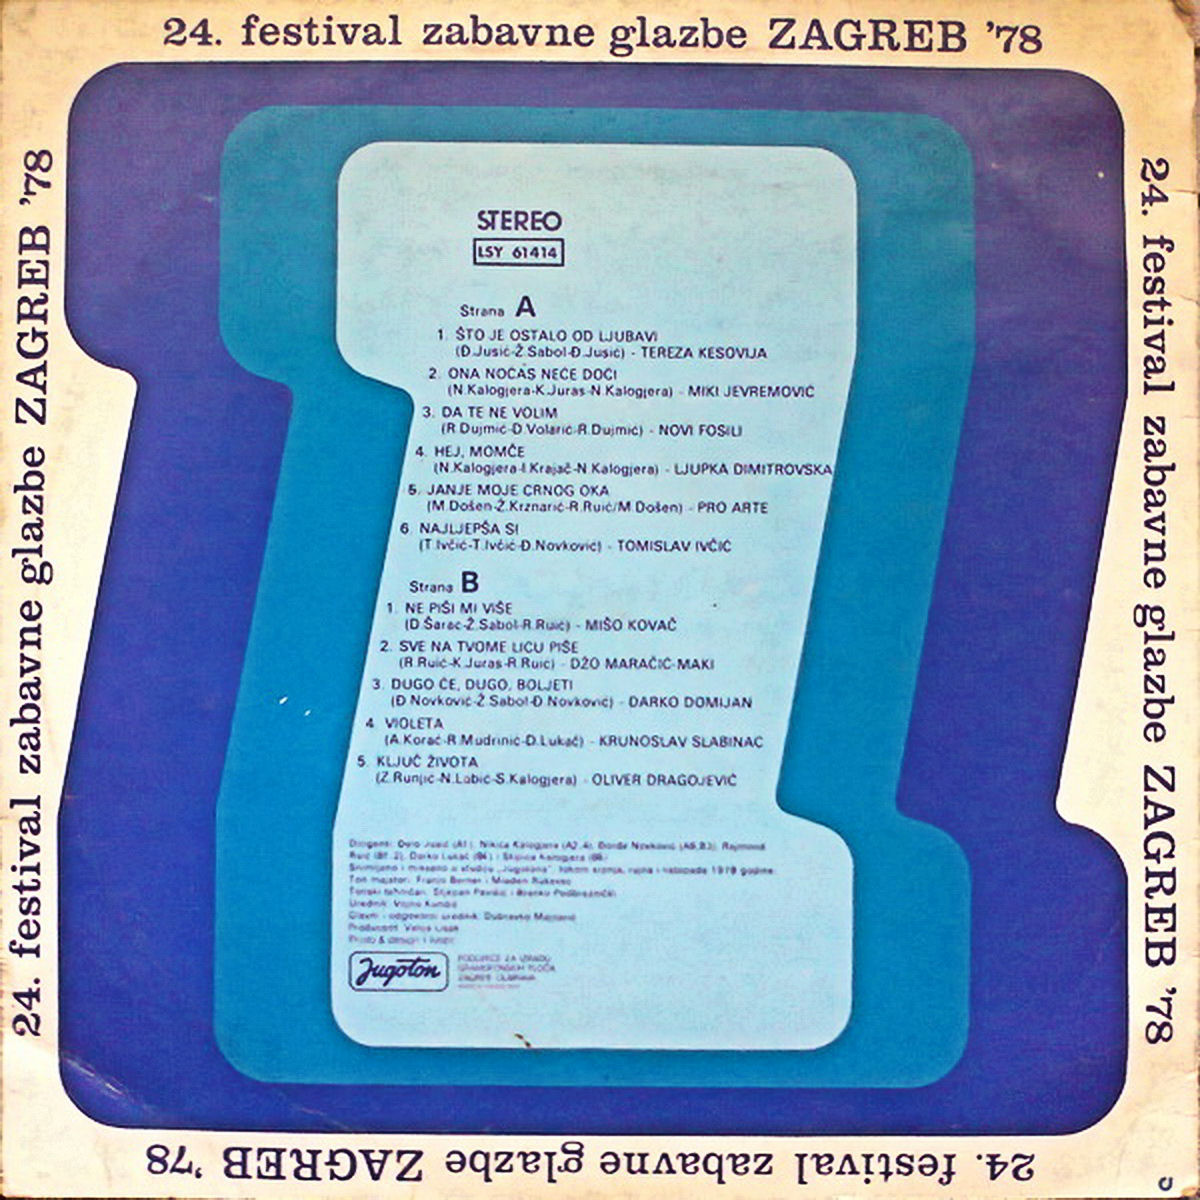 VA 1978 Zagreb 78 b